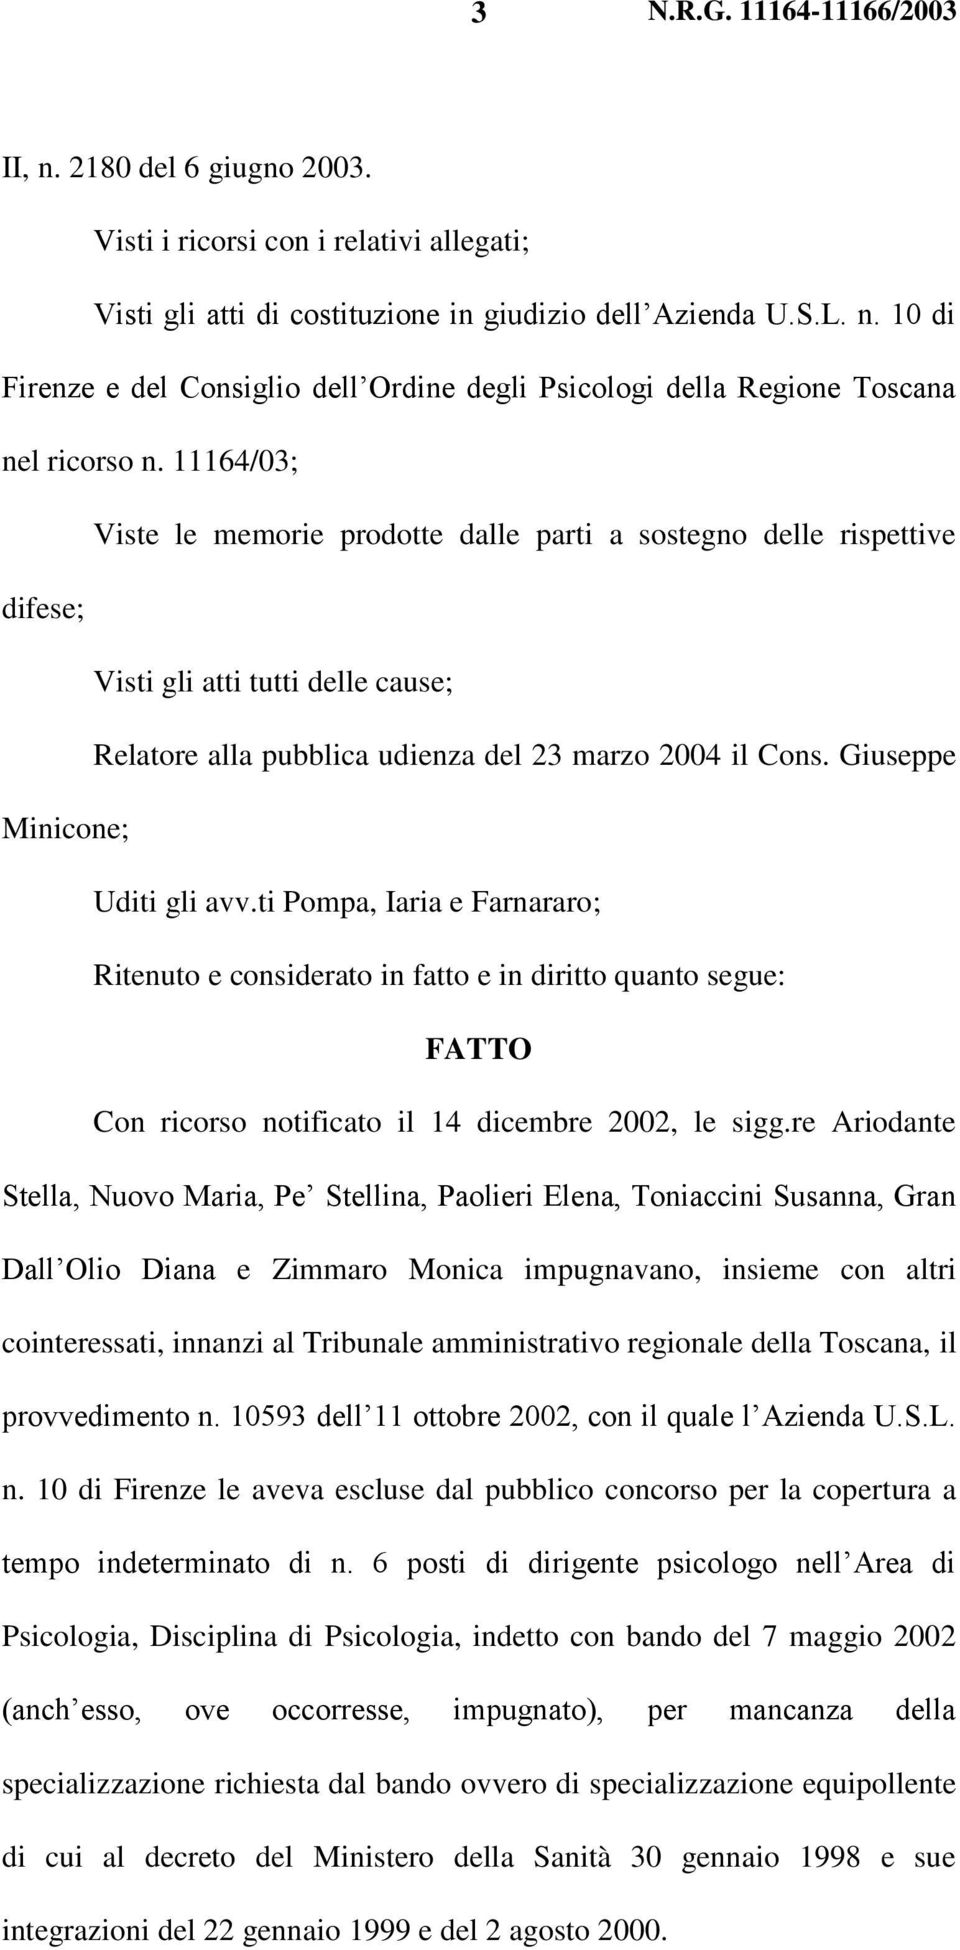 Giuseppe Minicone; Uditi gli avv.ti Pompa, Iaria e Farnararo; Ritenuto e considerato in fatto e in diritto quanto segue: FATTO Con ricorso notificato il 14 dicembre 2002, le sigg.